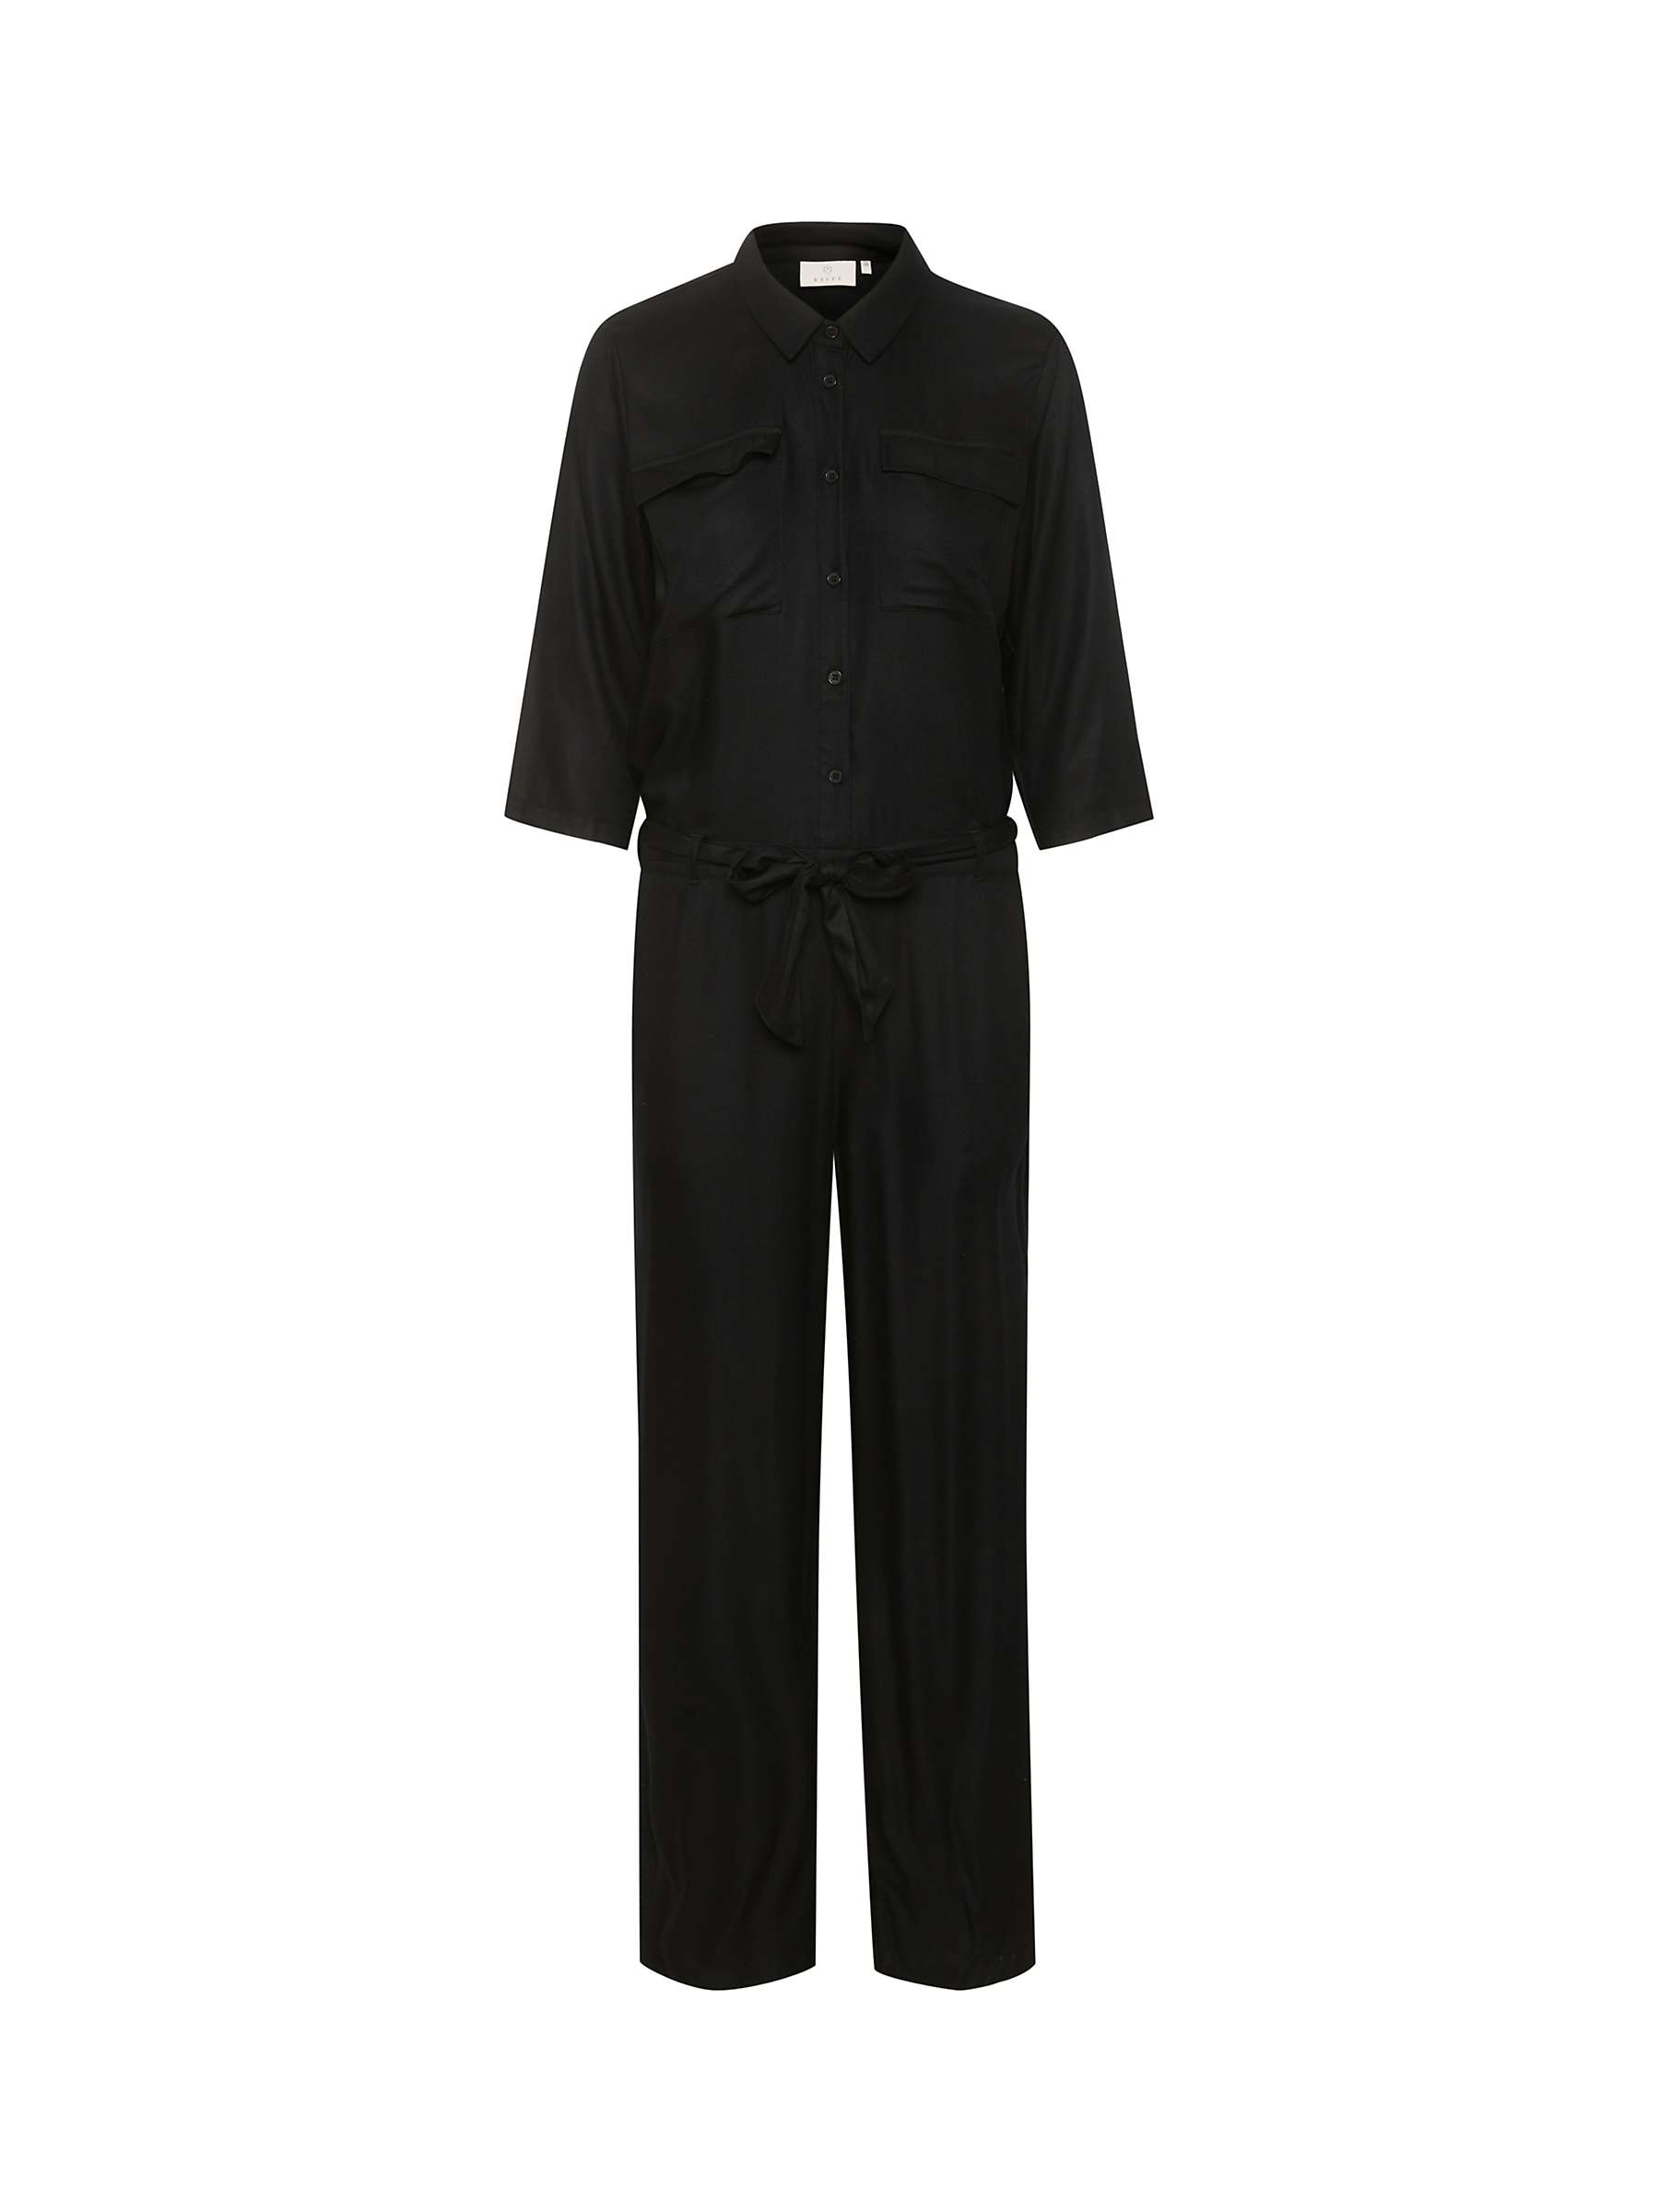 Buy KAFFE Ruthie 3/4 Sleeve Boilersuit, Deep Black Online at johnlewis.com